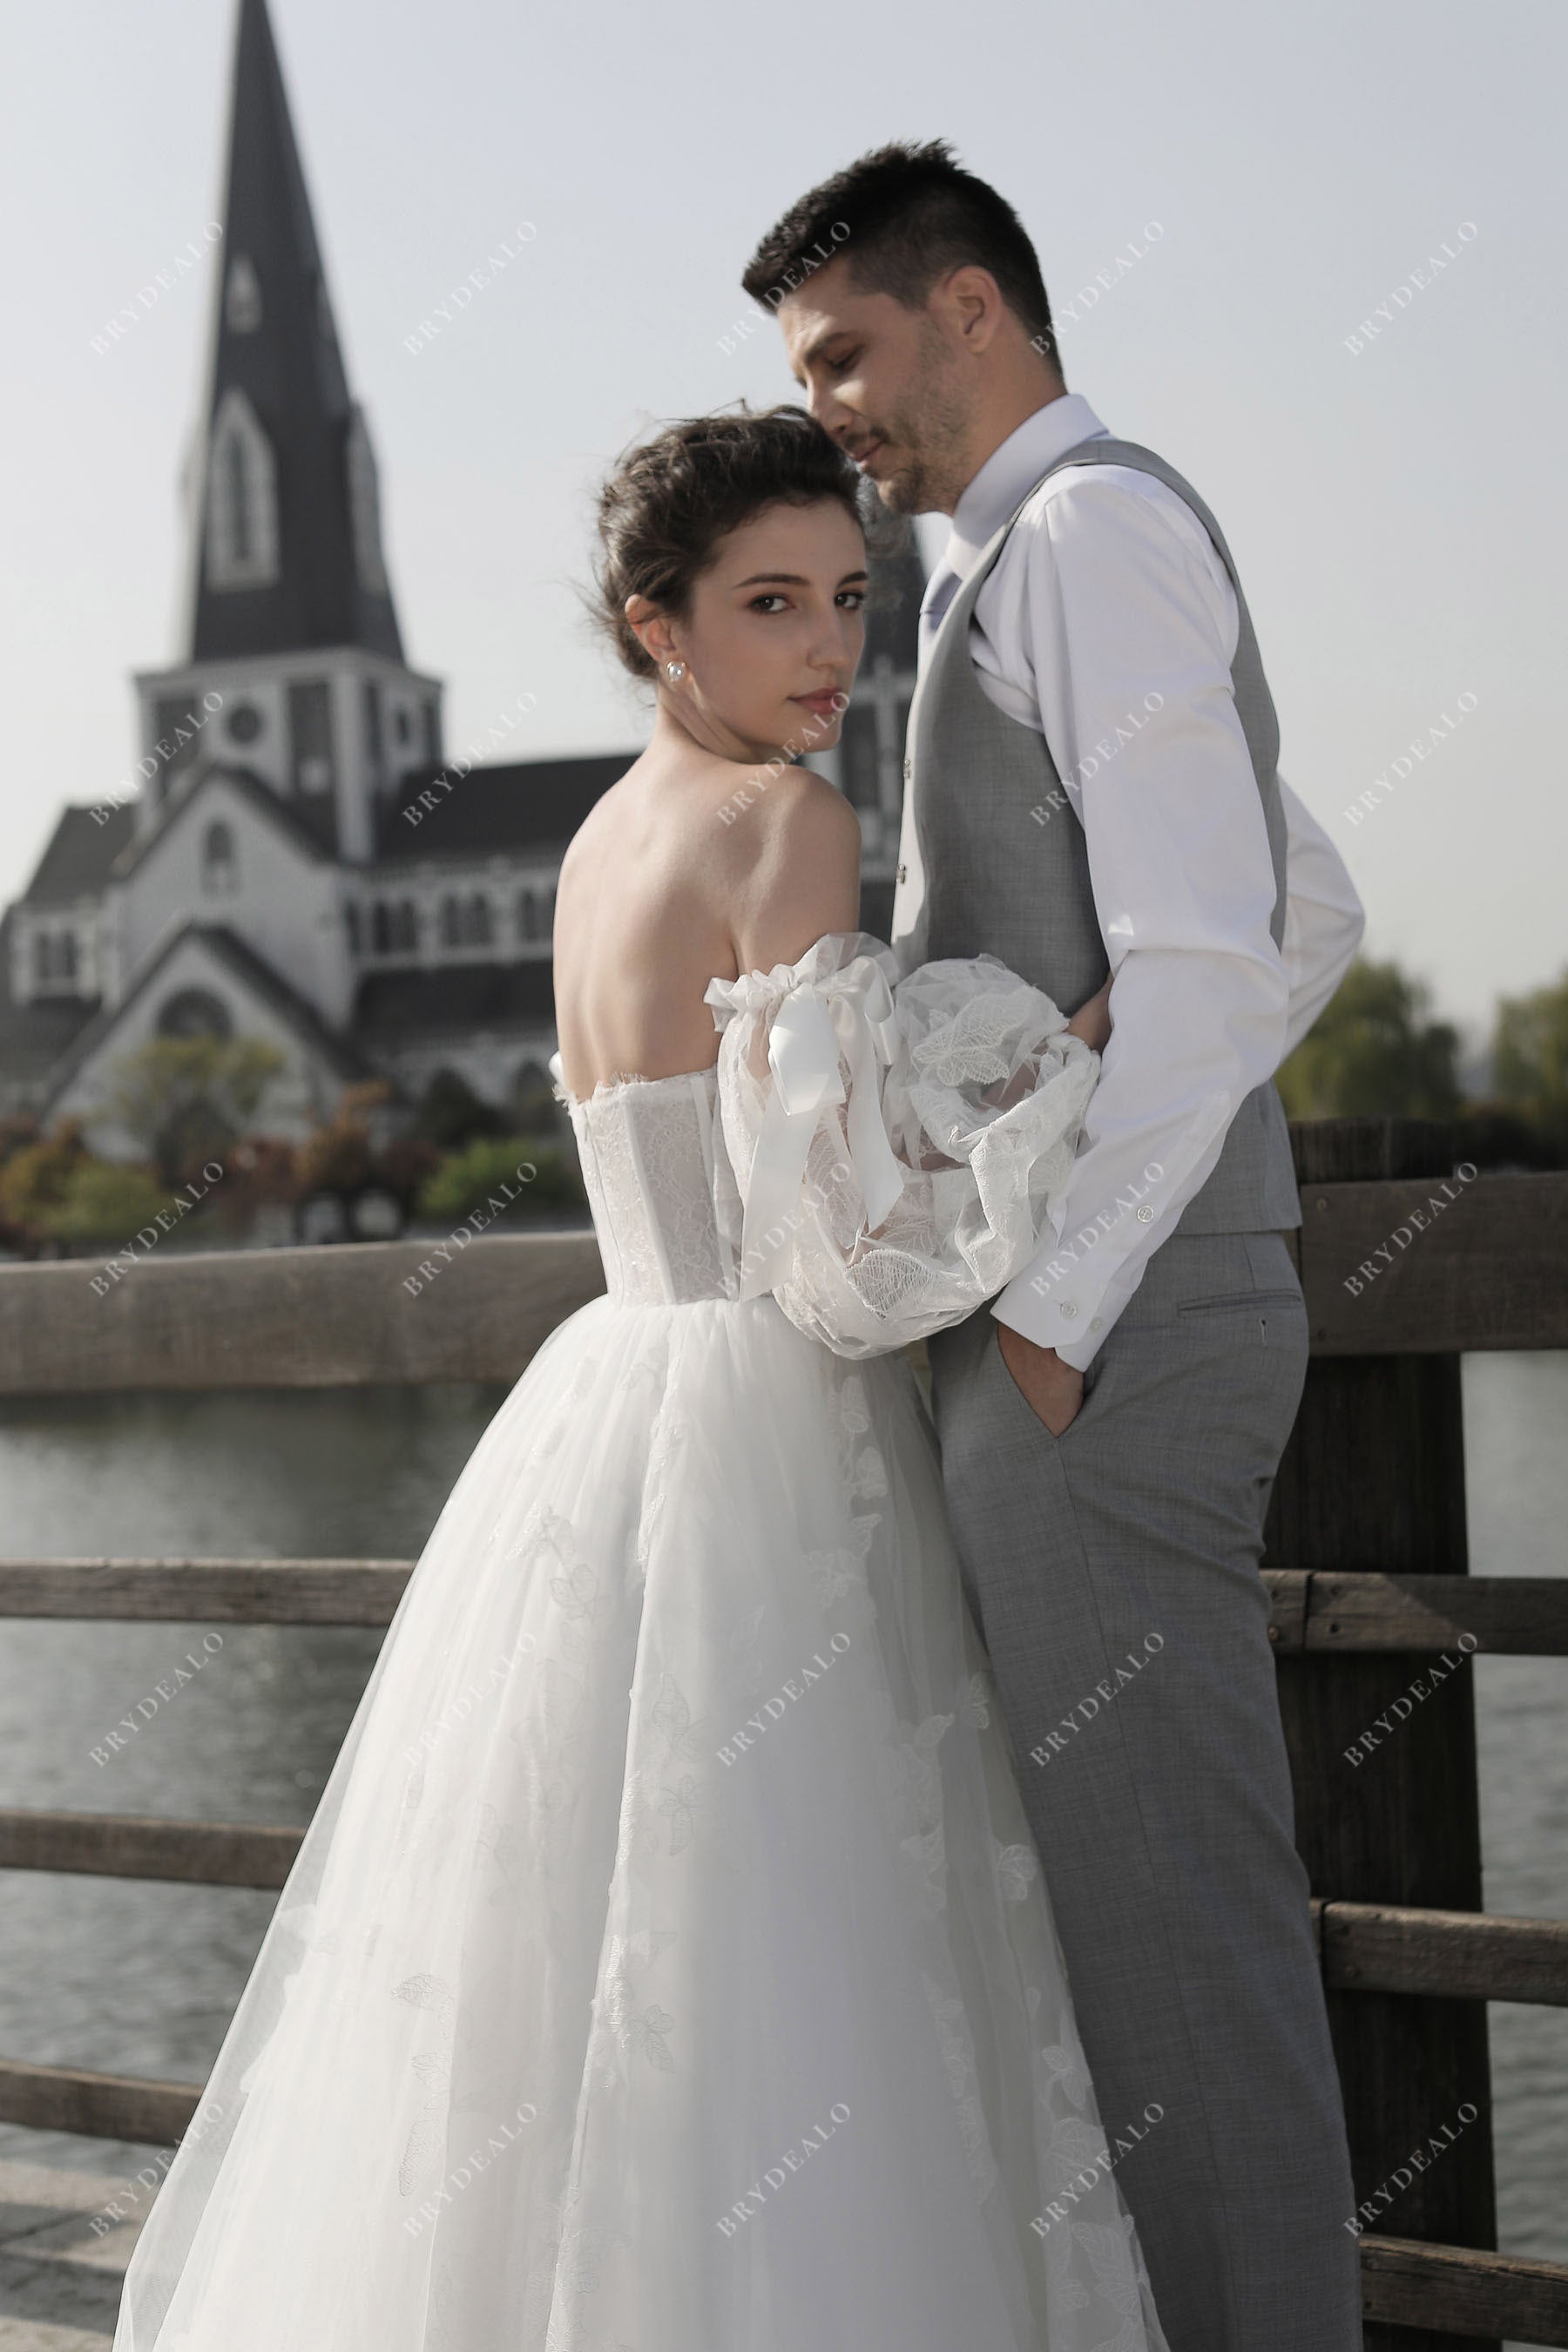 Sheer Bell Sleeve Lace Ballgown Wedding Dress